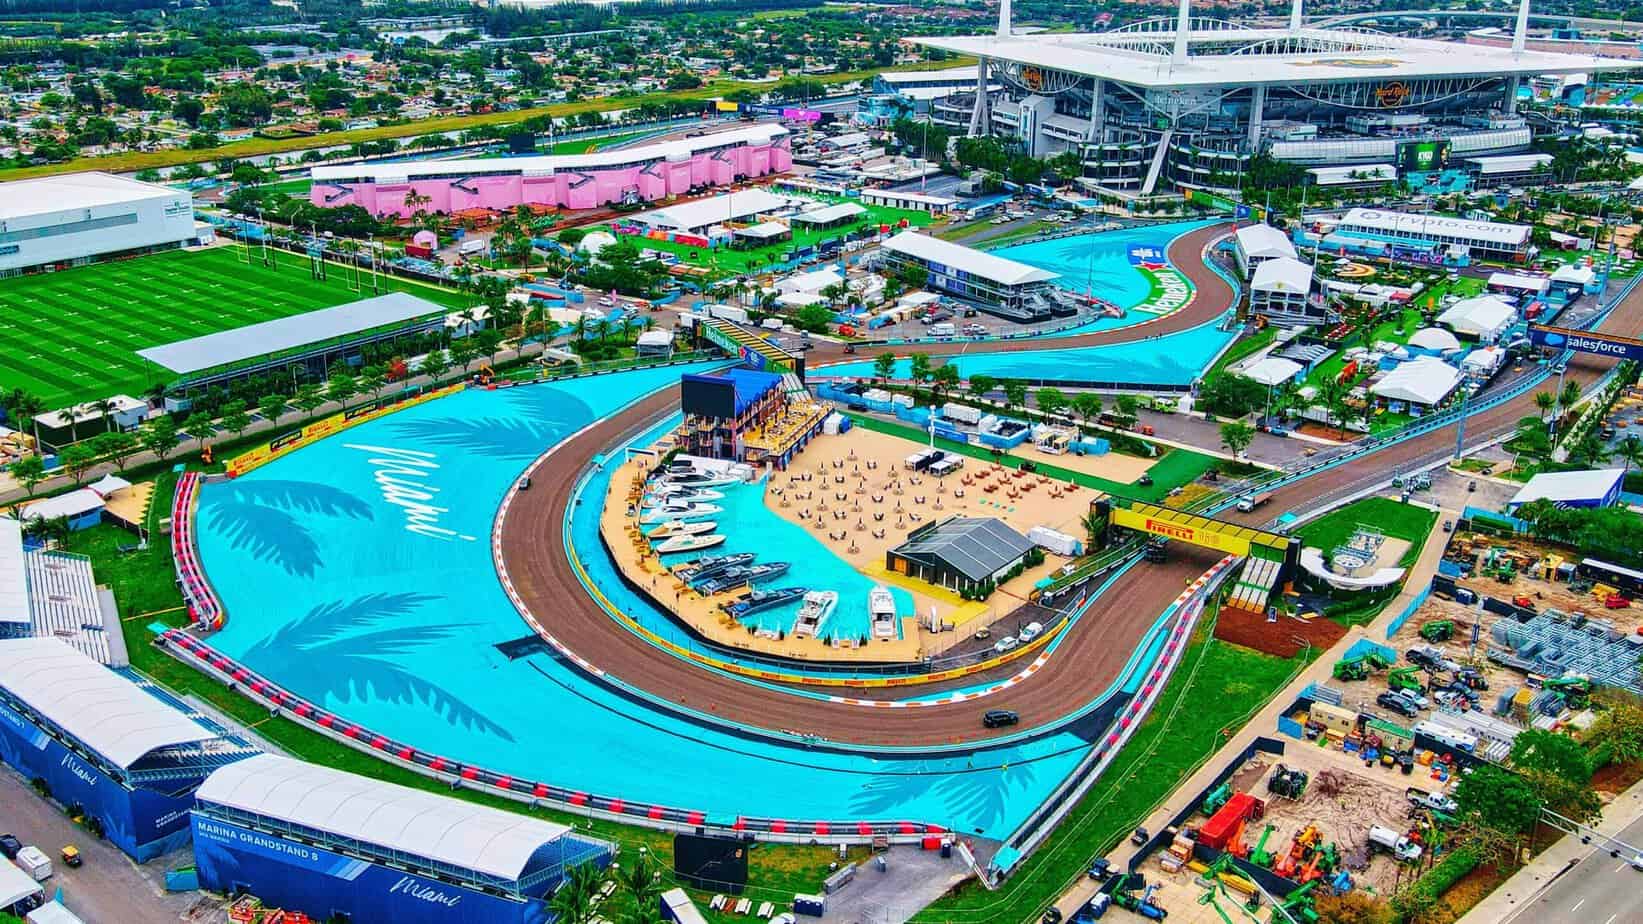 Vista previa y probabilidades de apuestas del Gran Premio de Miami 2023